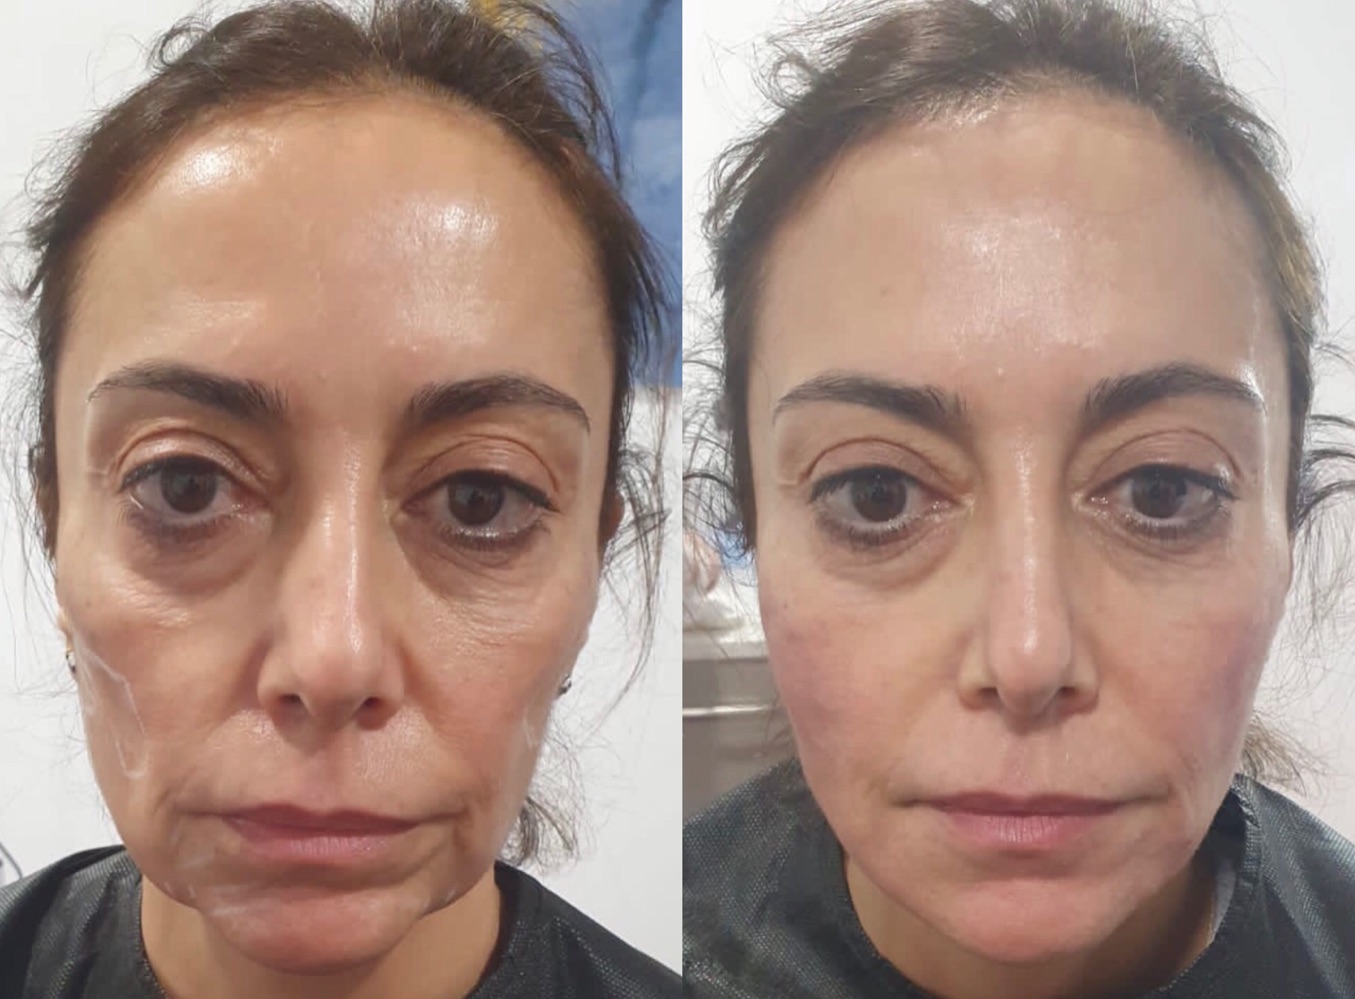 mujer antes y despues de un tratamiento fullface en clinicas eloi funtane Canarias